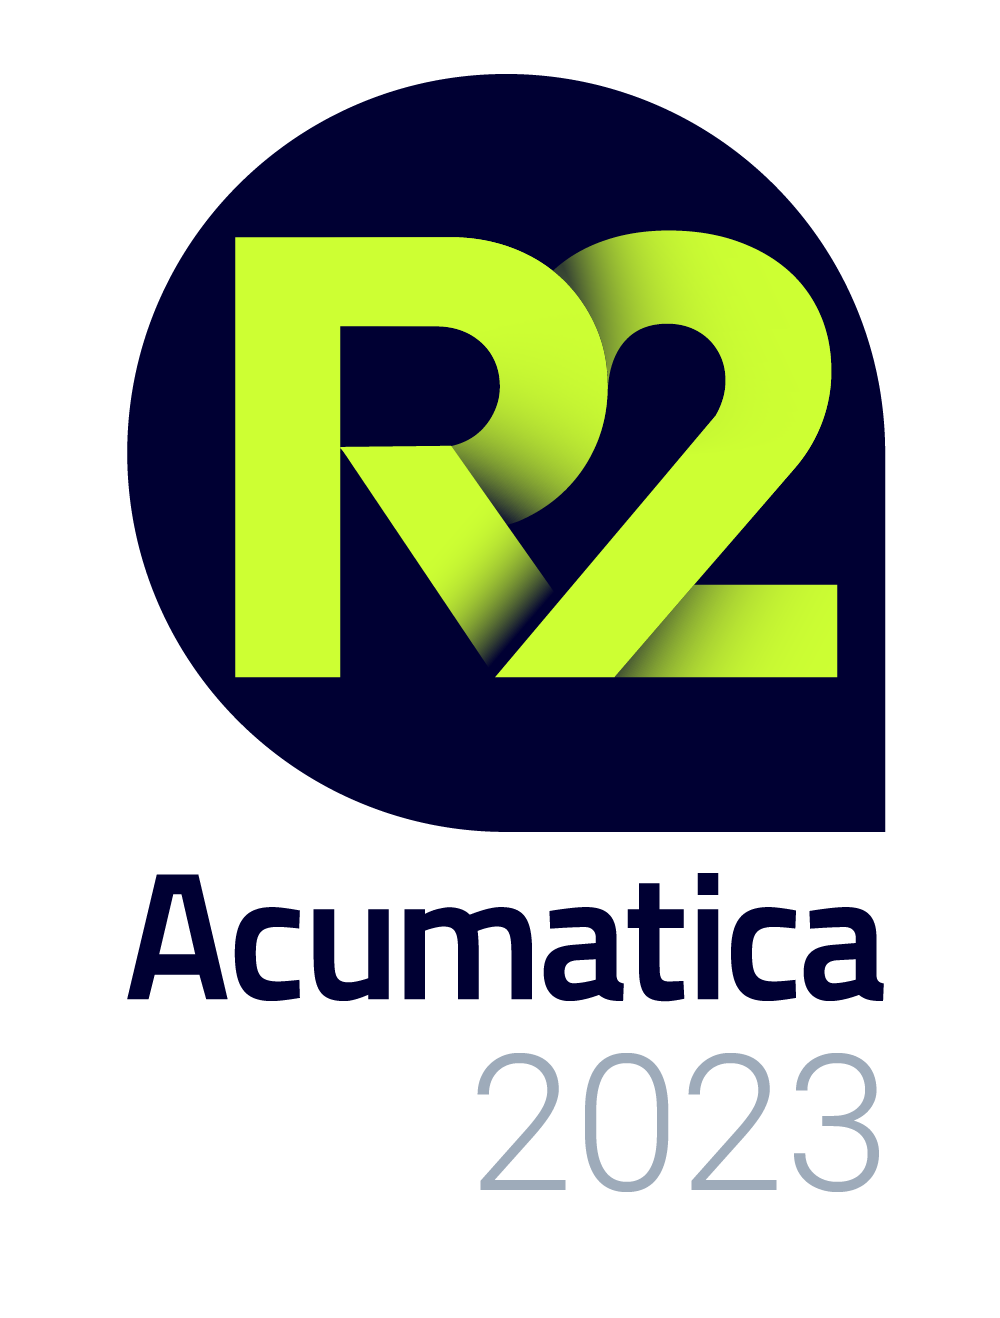 R2 2022